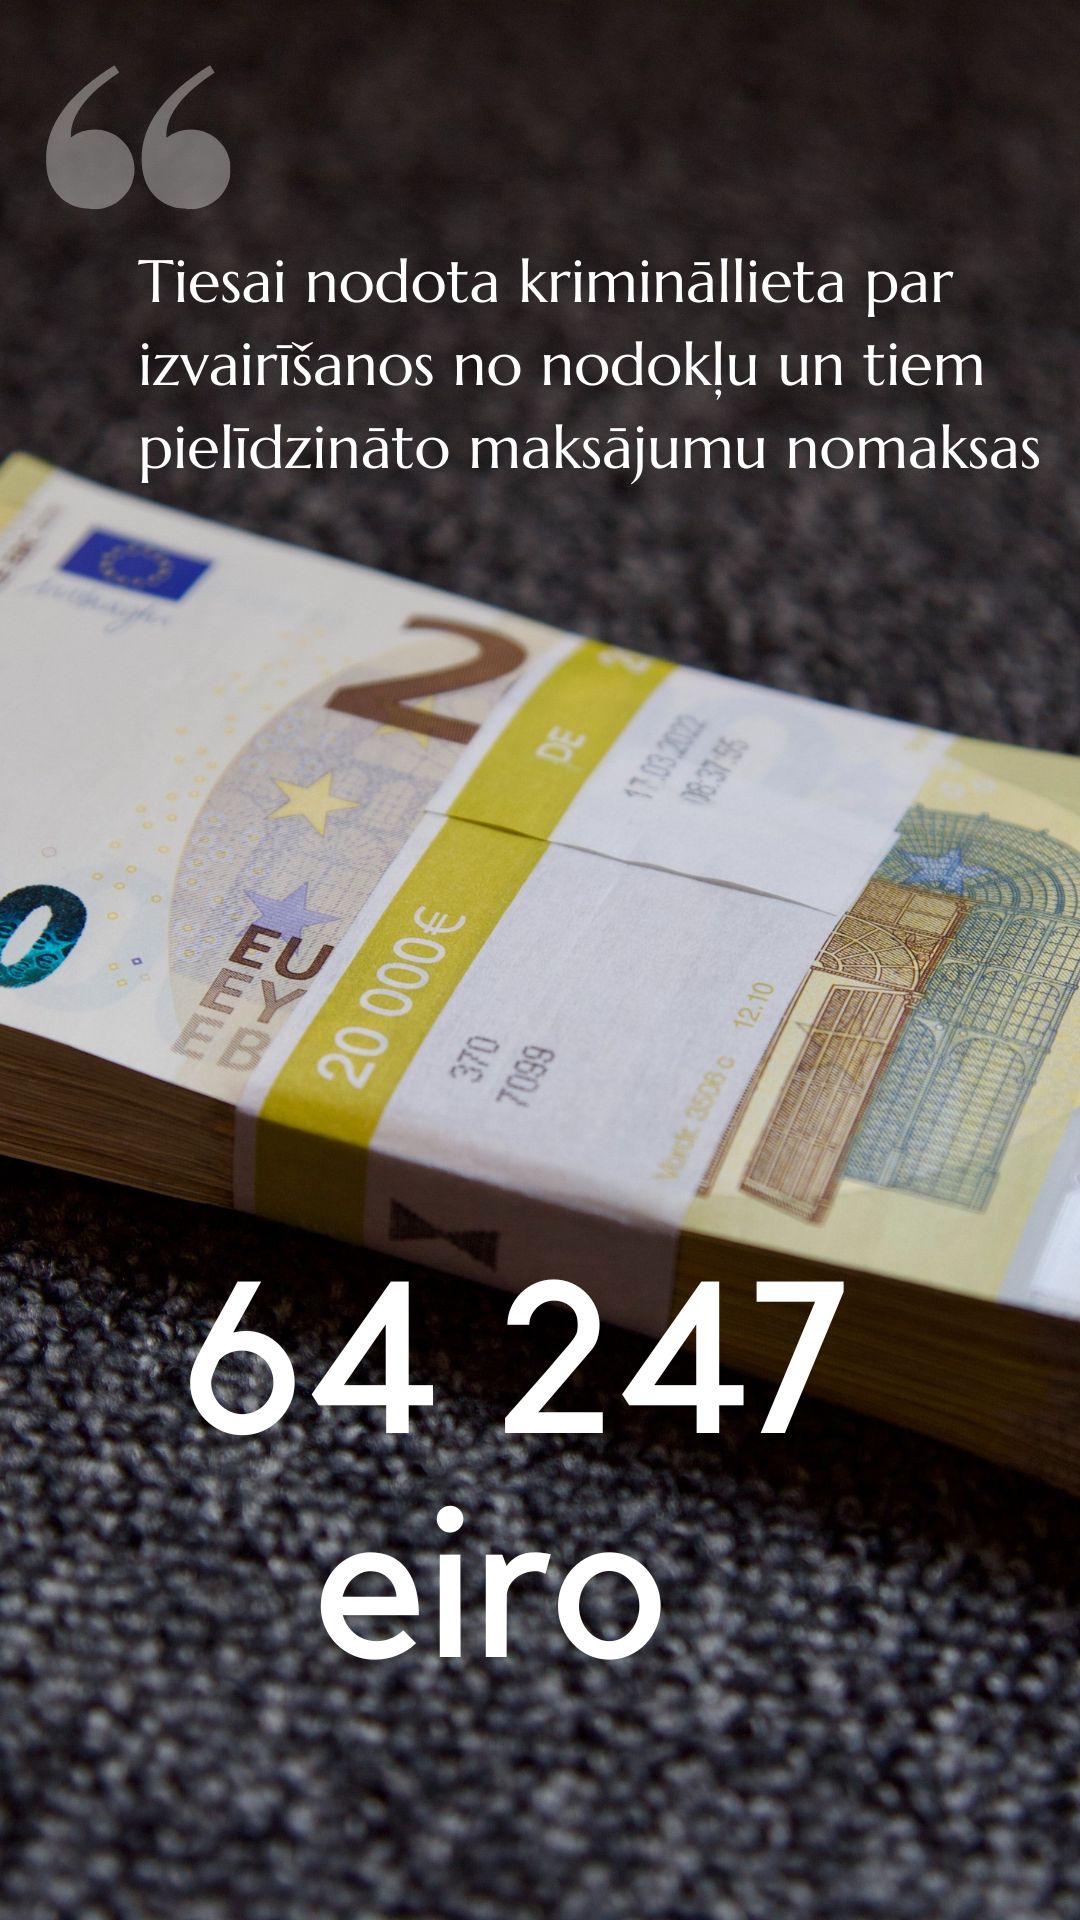 Attēls: Tiesai nodota krimināllieta par izvairīšanos no nodokļu un tiem pielīdzināto maksājumu nomaksas 64 247 eiro apmērā